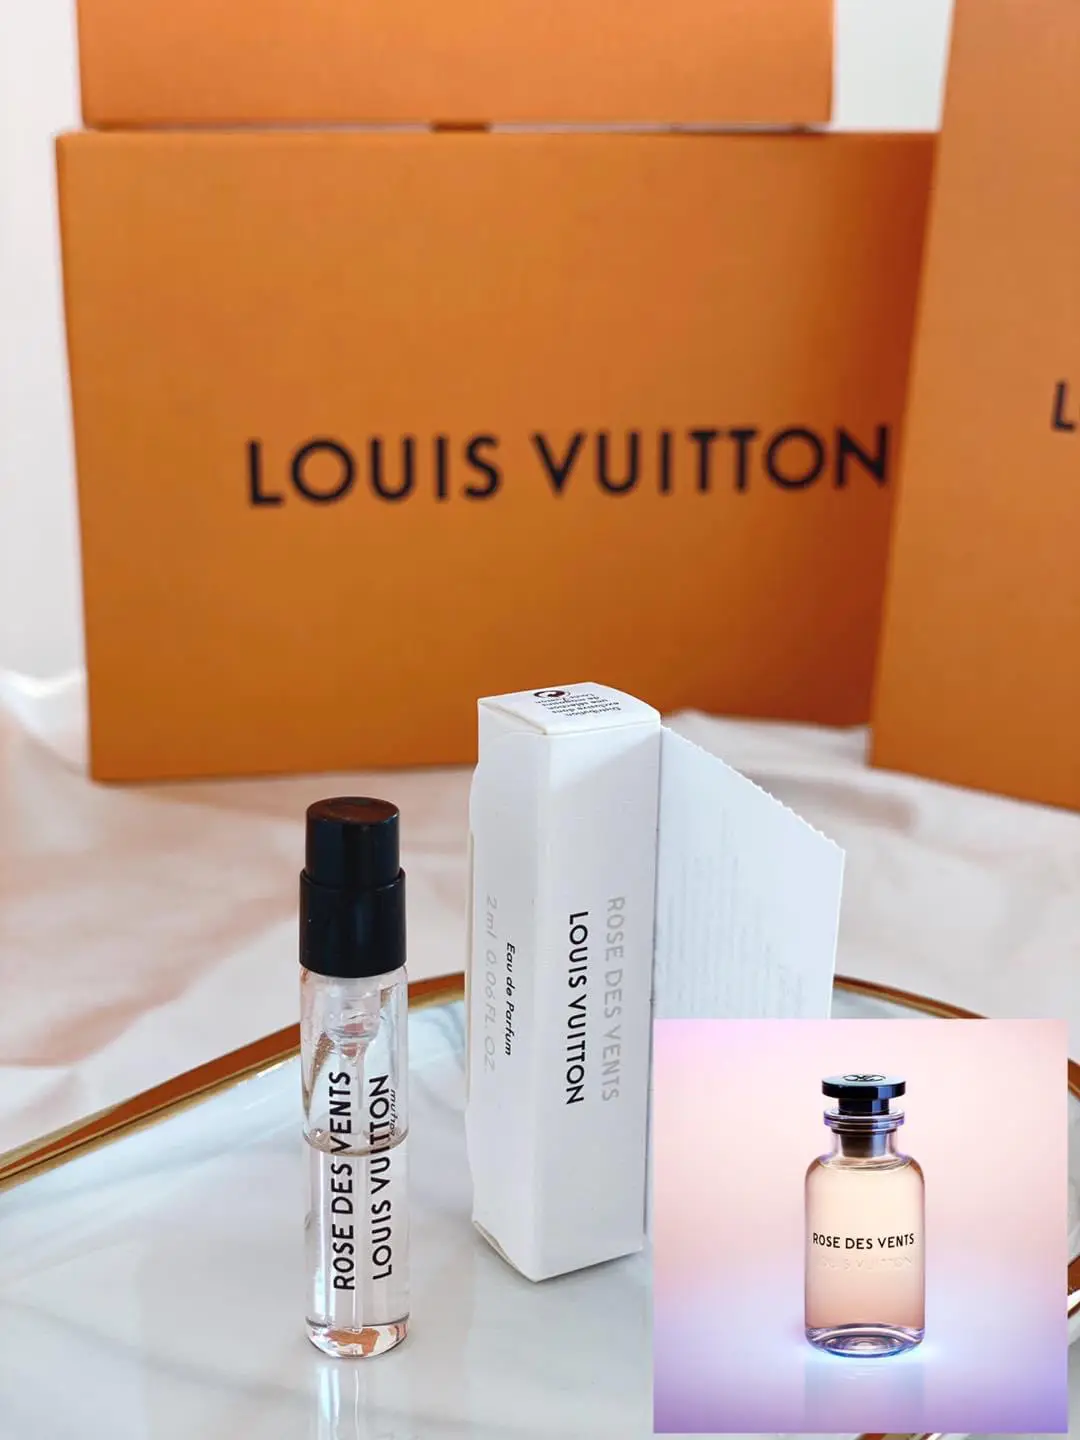 Louis Vuitton ROSE DES VENTS Perfume SamplesLouis Vuitton perfume samp